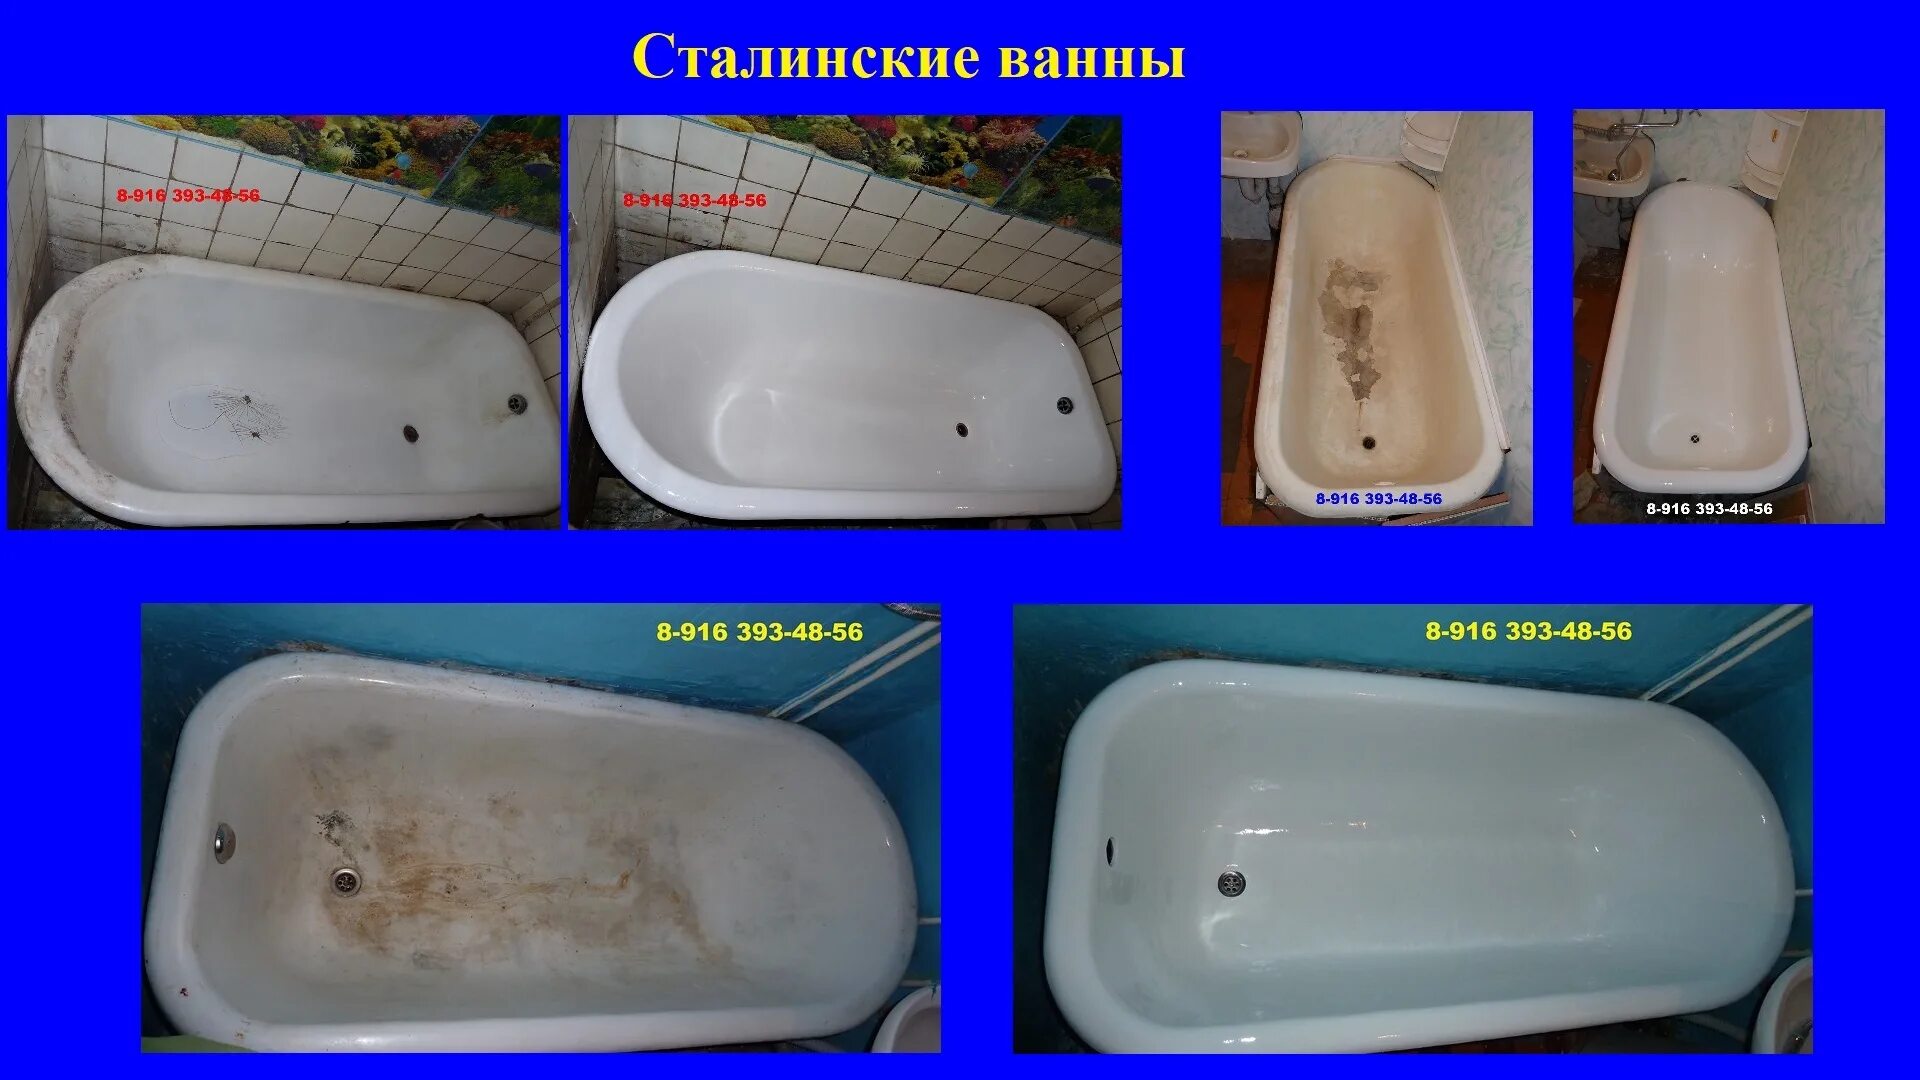 Эмалировка чугунной ванны. Эмалировка ванны в Москве. Сравнение ванн. Реконструкция ванны чугунной. Реставрация ванны цена москва